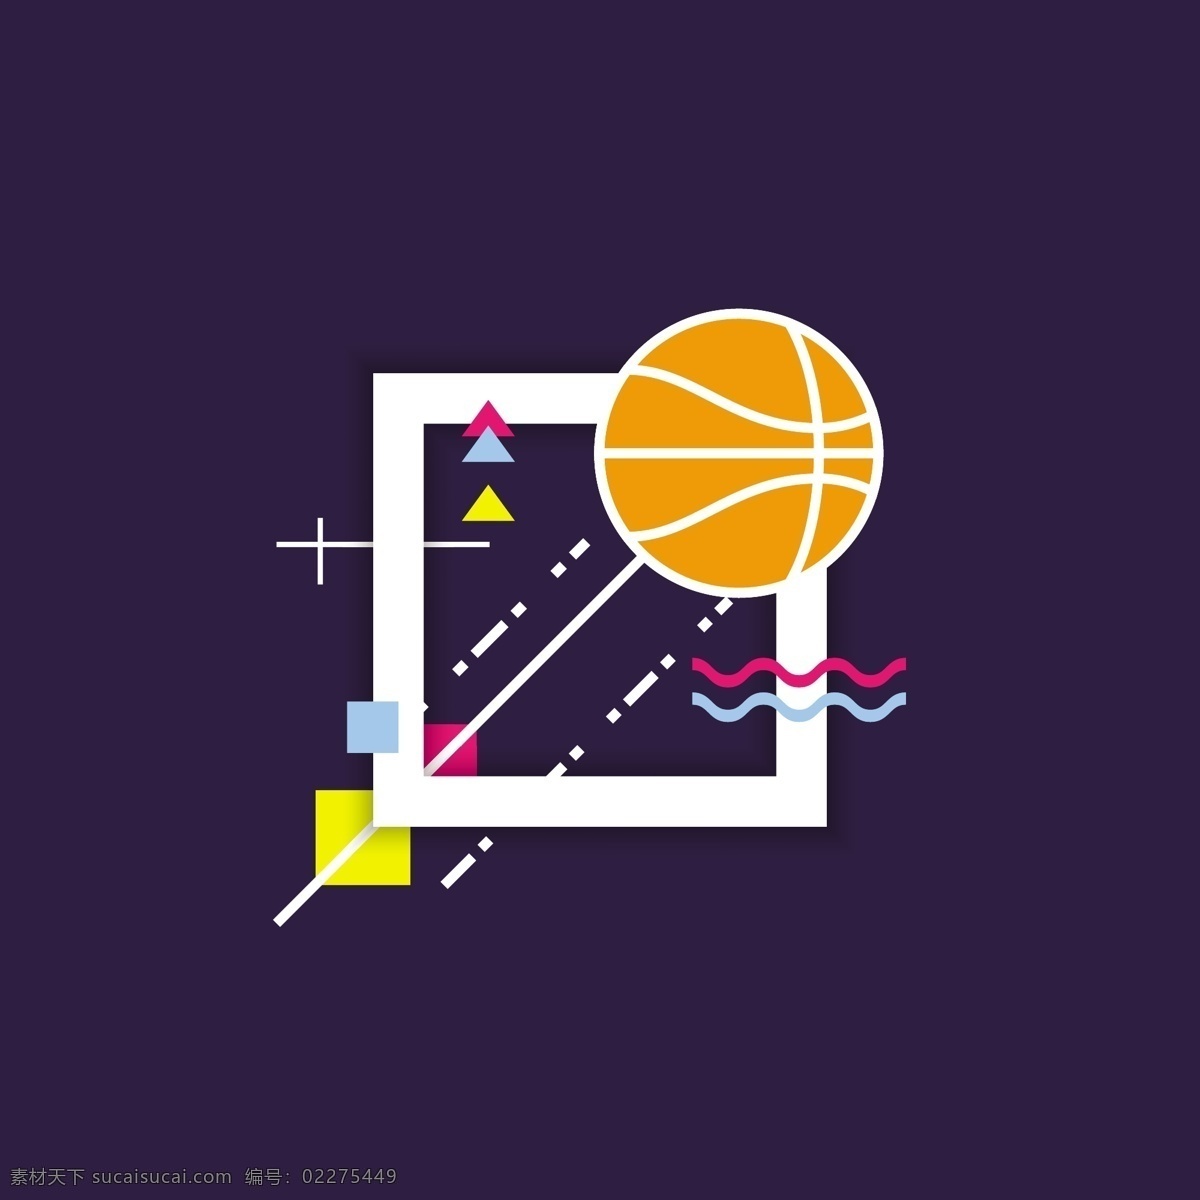 篮球背景 背景 抽象背景 抽象 运动 篮球 色彩 壁纸 球